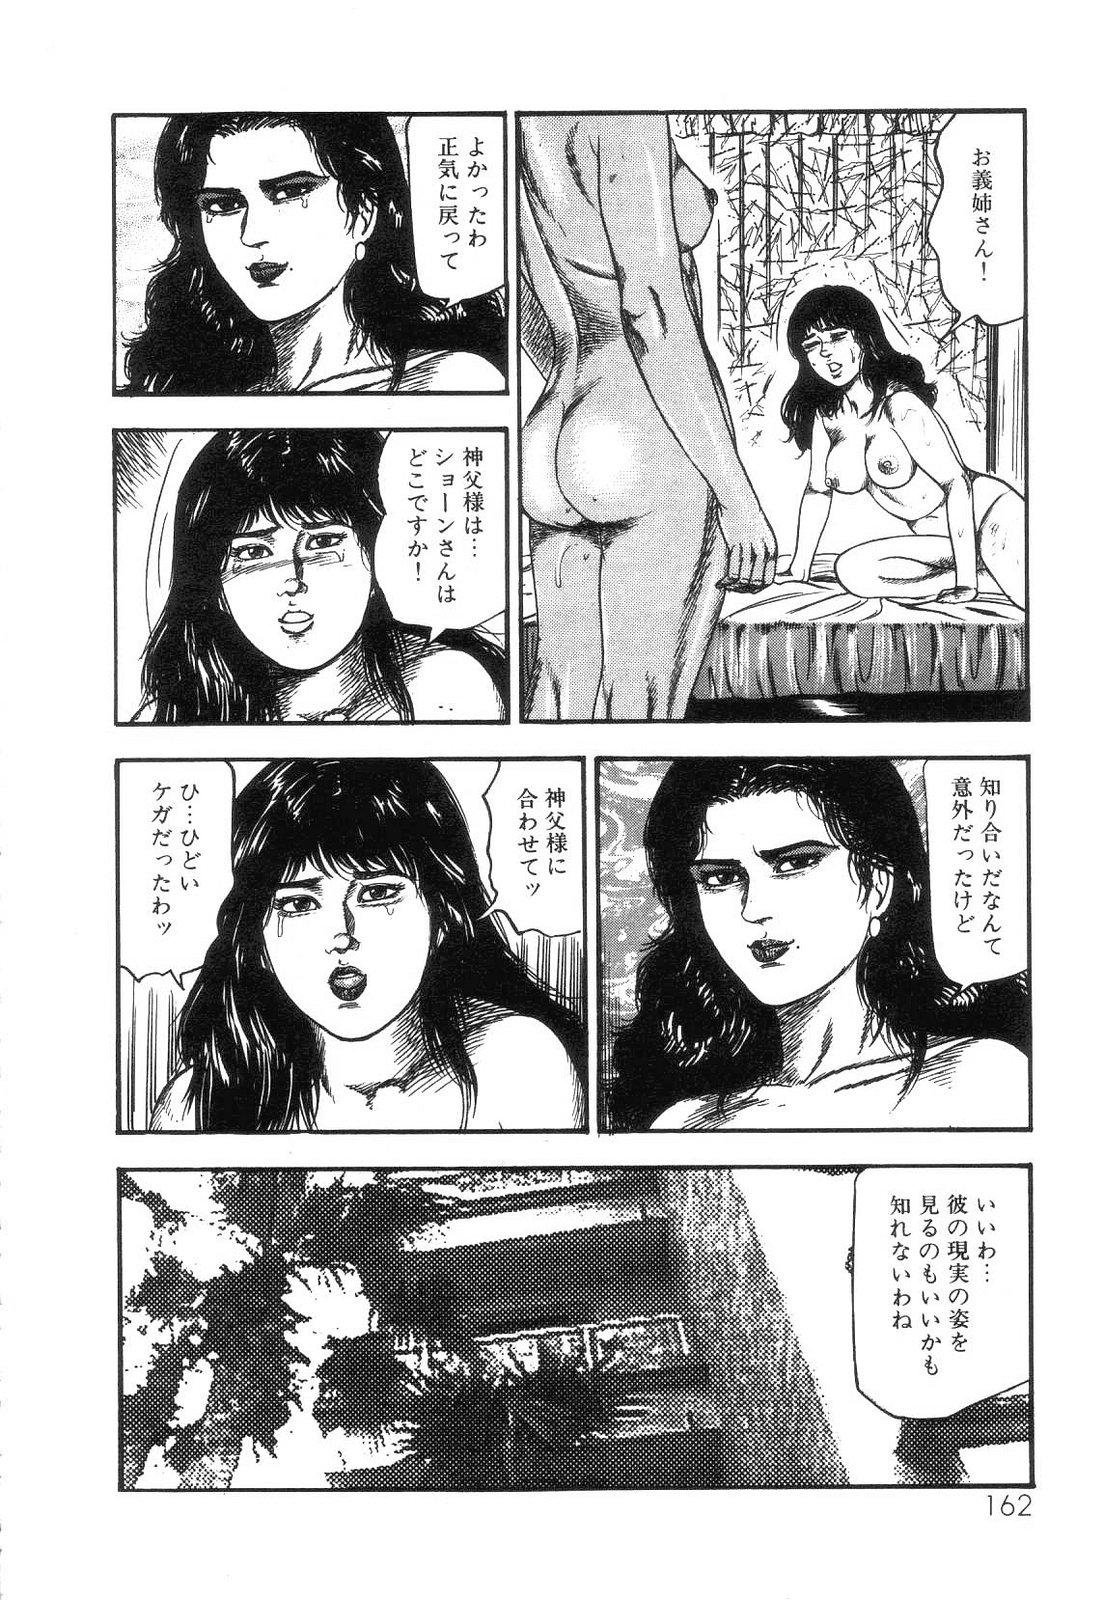 Shiro no Mokushiroku Vol. 4 - Bichiku Karen no Shou 163